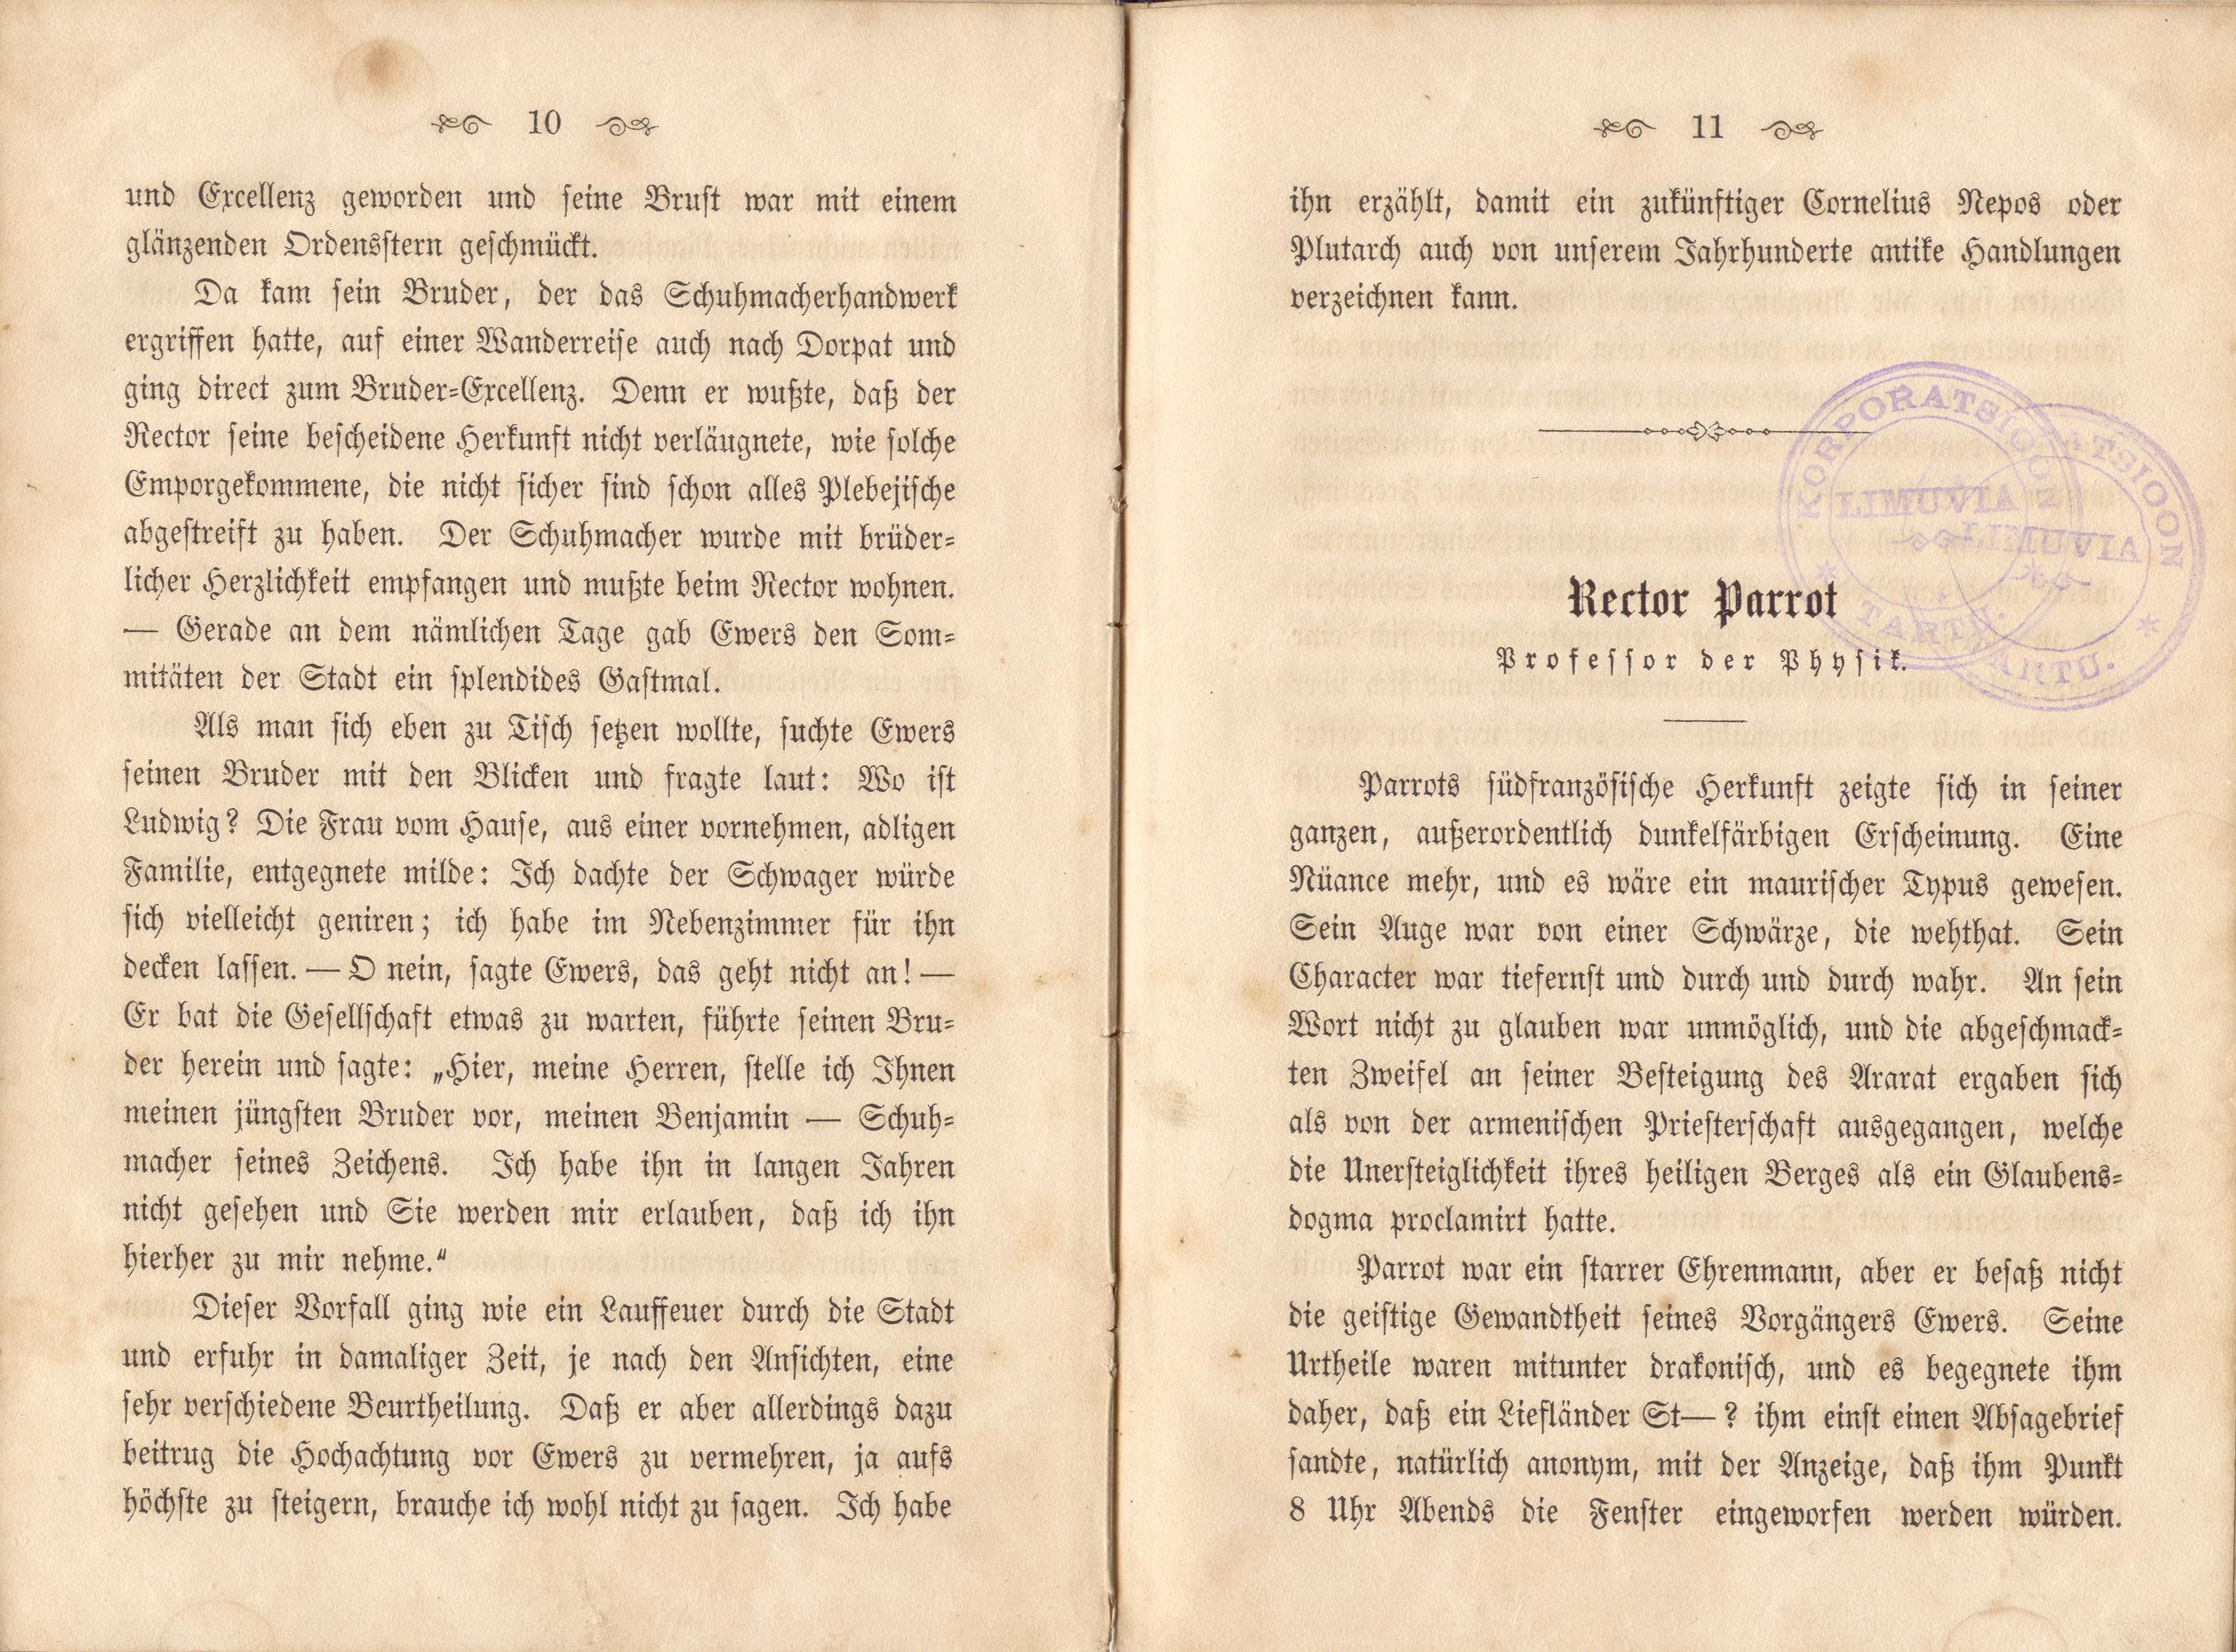 Dorpats Grössen und Typen (1868) | 8. (10-11) Main body of text